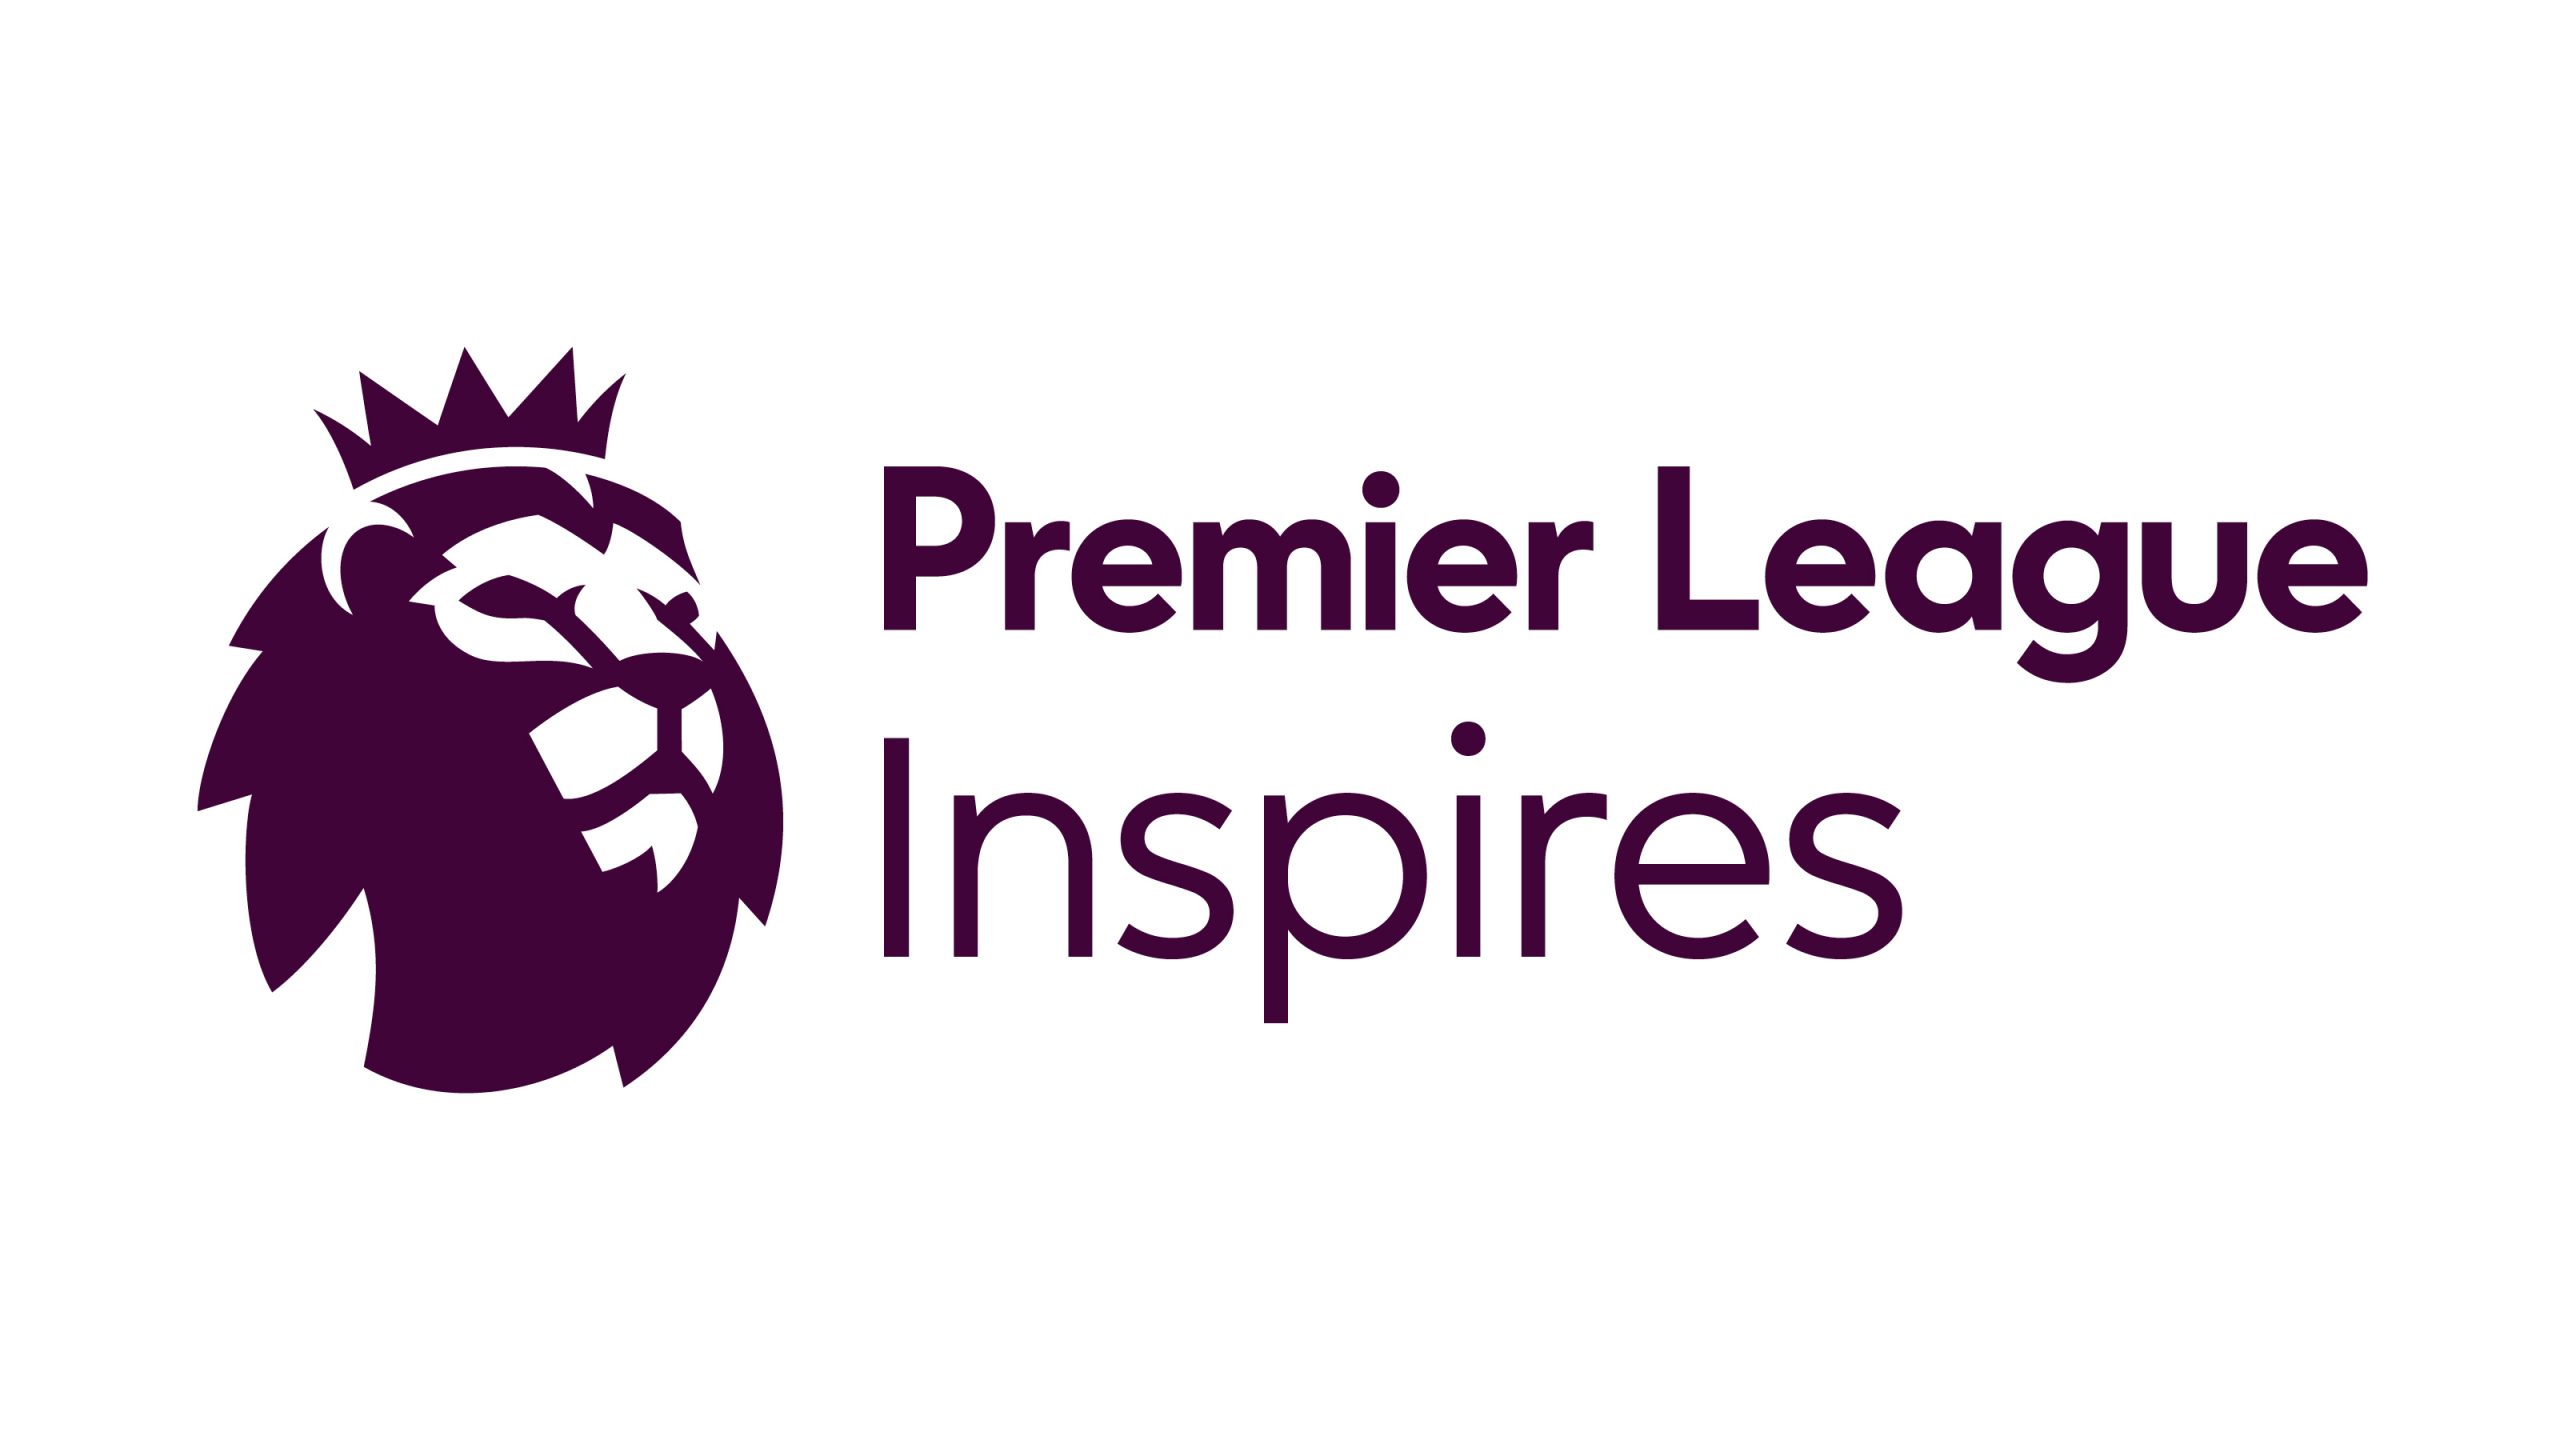 Premier League Inspires logo